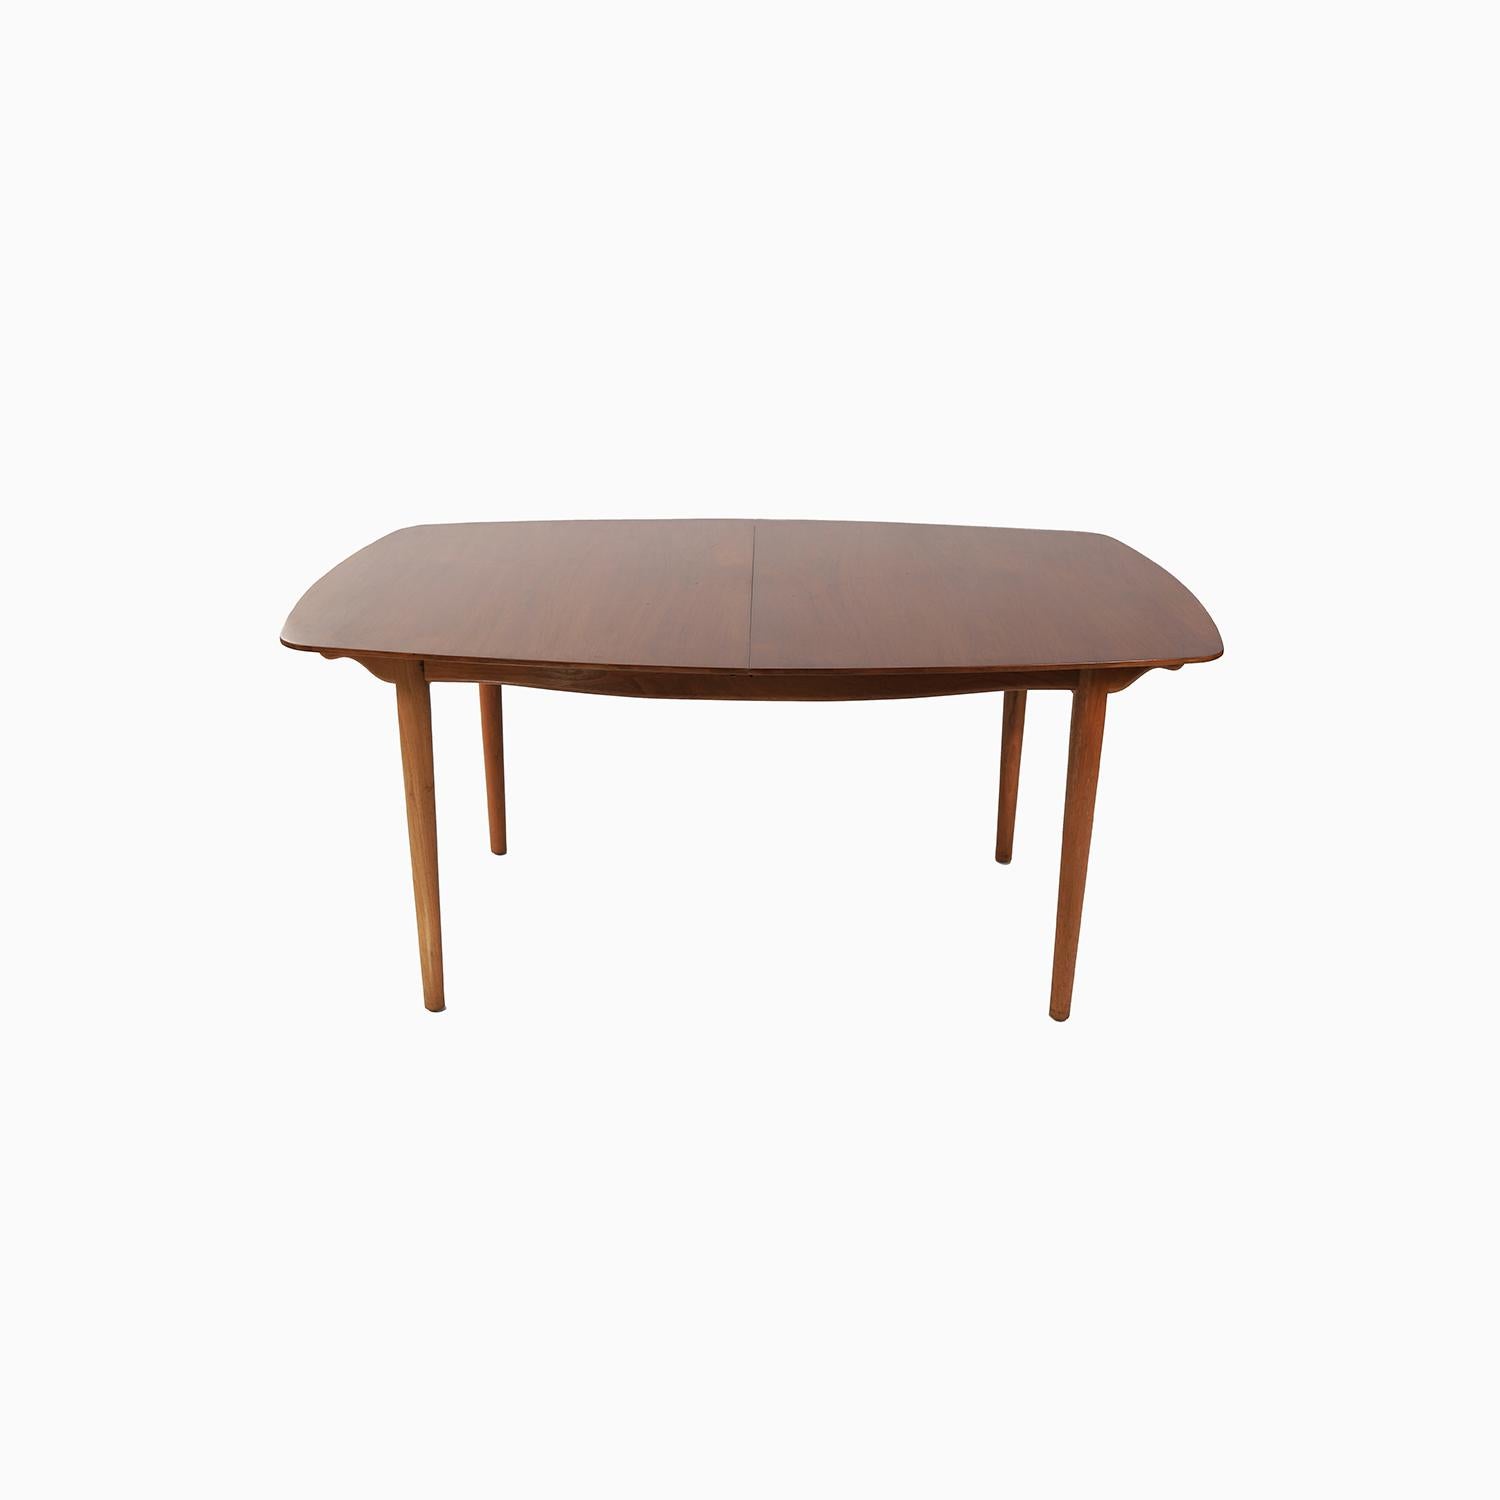 Un design moderne danois de Finn Juhls pour le fabricant américain Baker Furniture. Cette relation entre Juhls et Baker a propulsé le mobilier moderne danois dans les foyers de nombreux Américains. Un magnifique design en forme de bateau en noyer